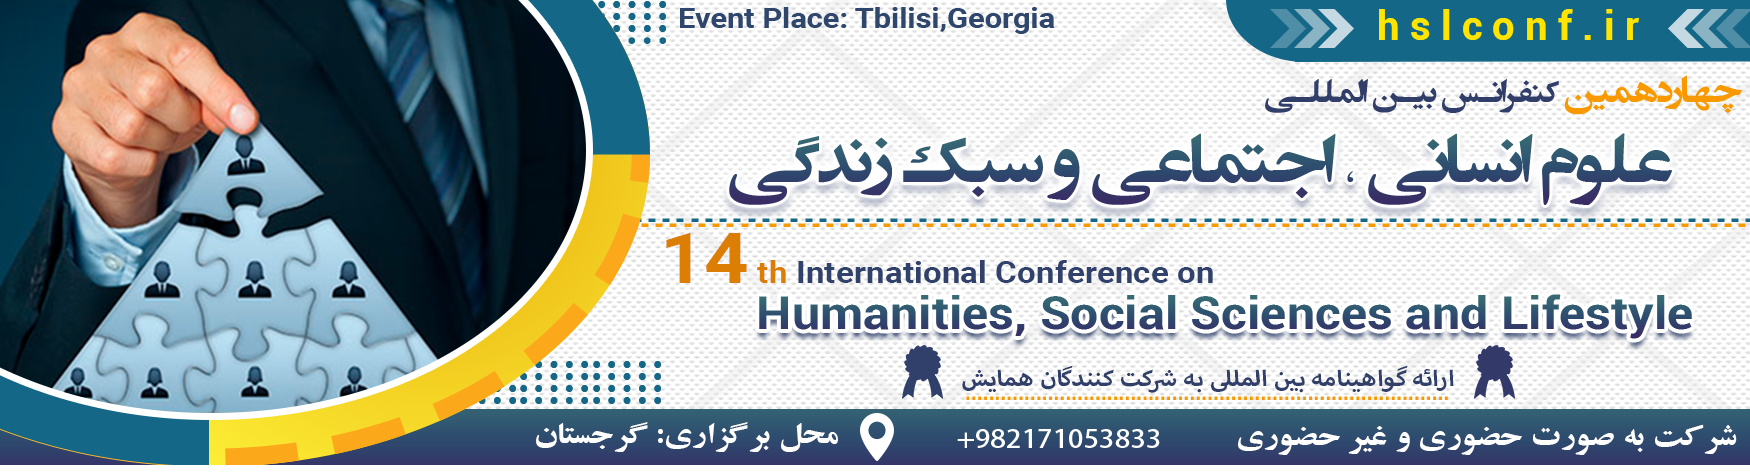 کنفرانس بین المللی علوم انسانی،اجتماعی و سبک زندگی